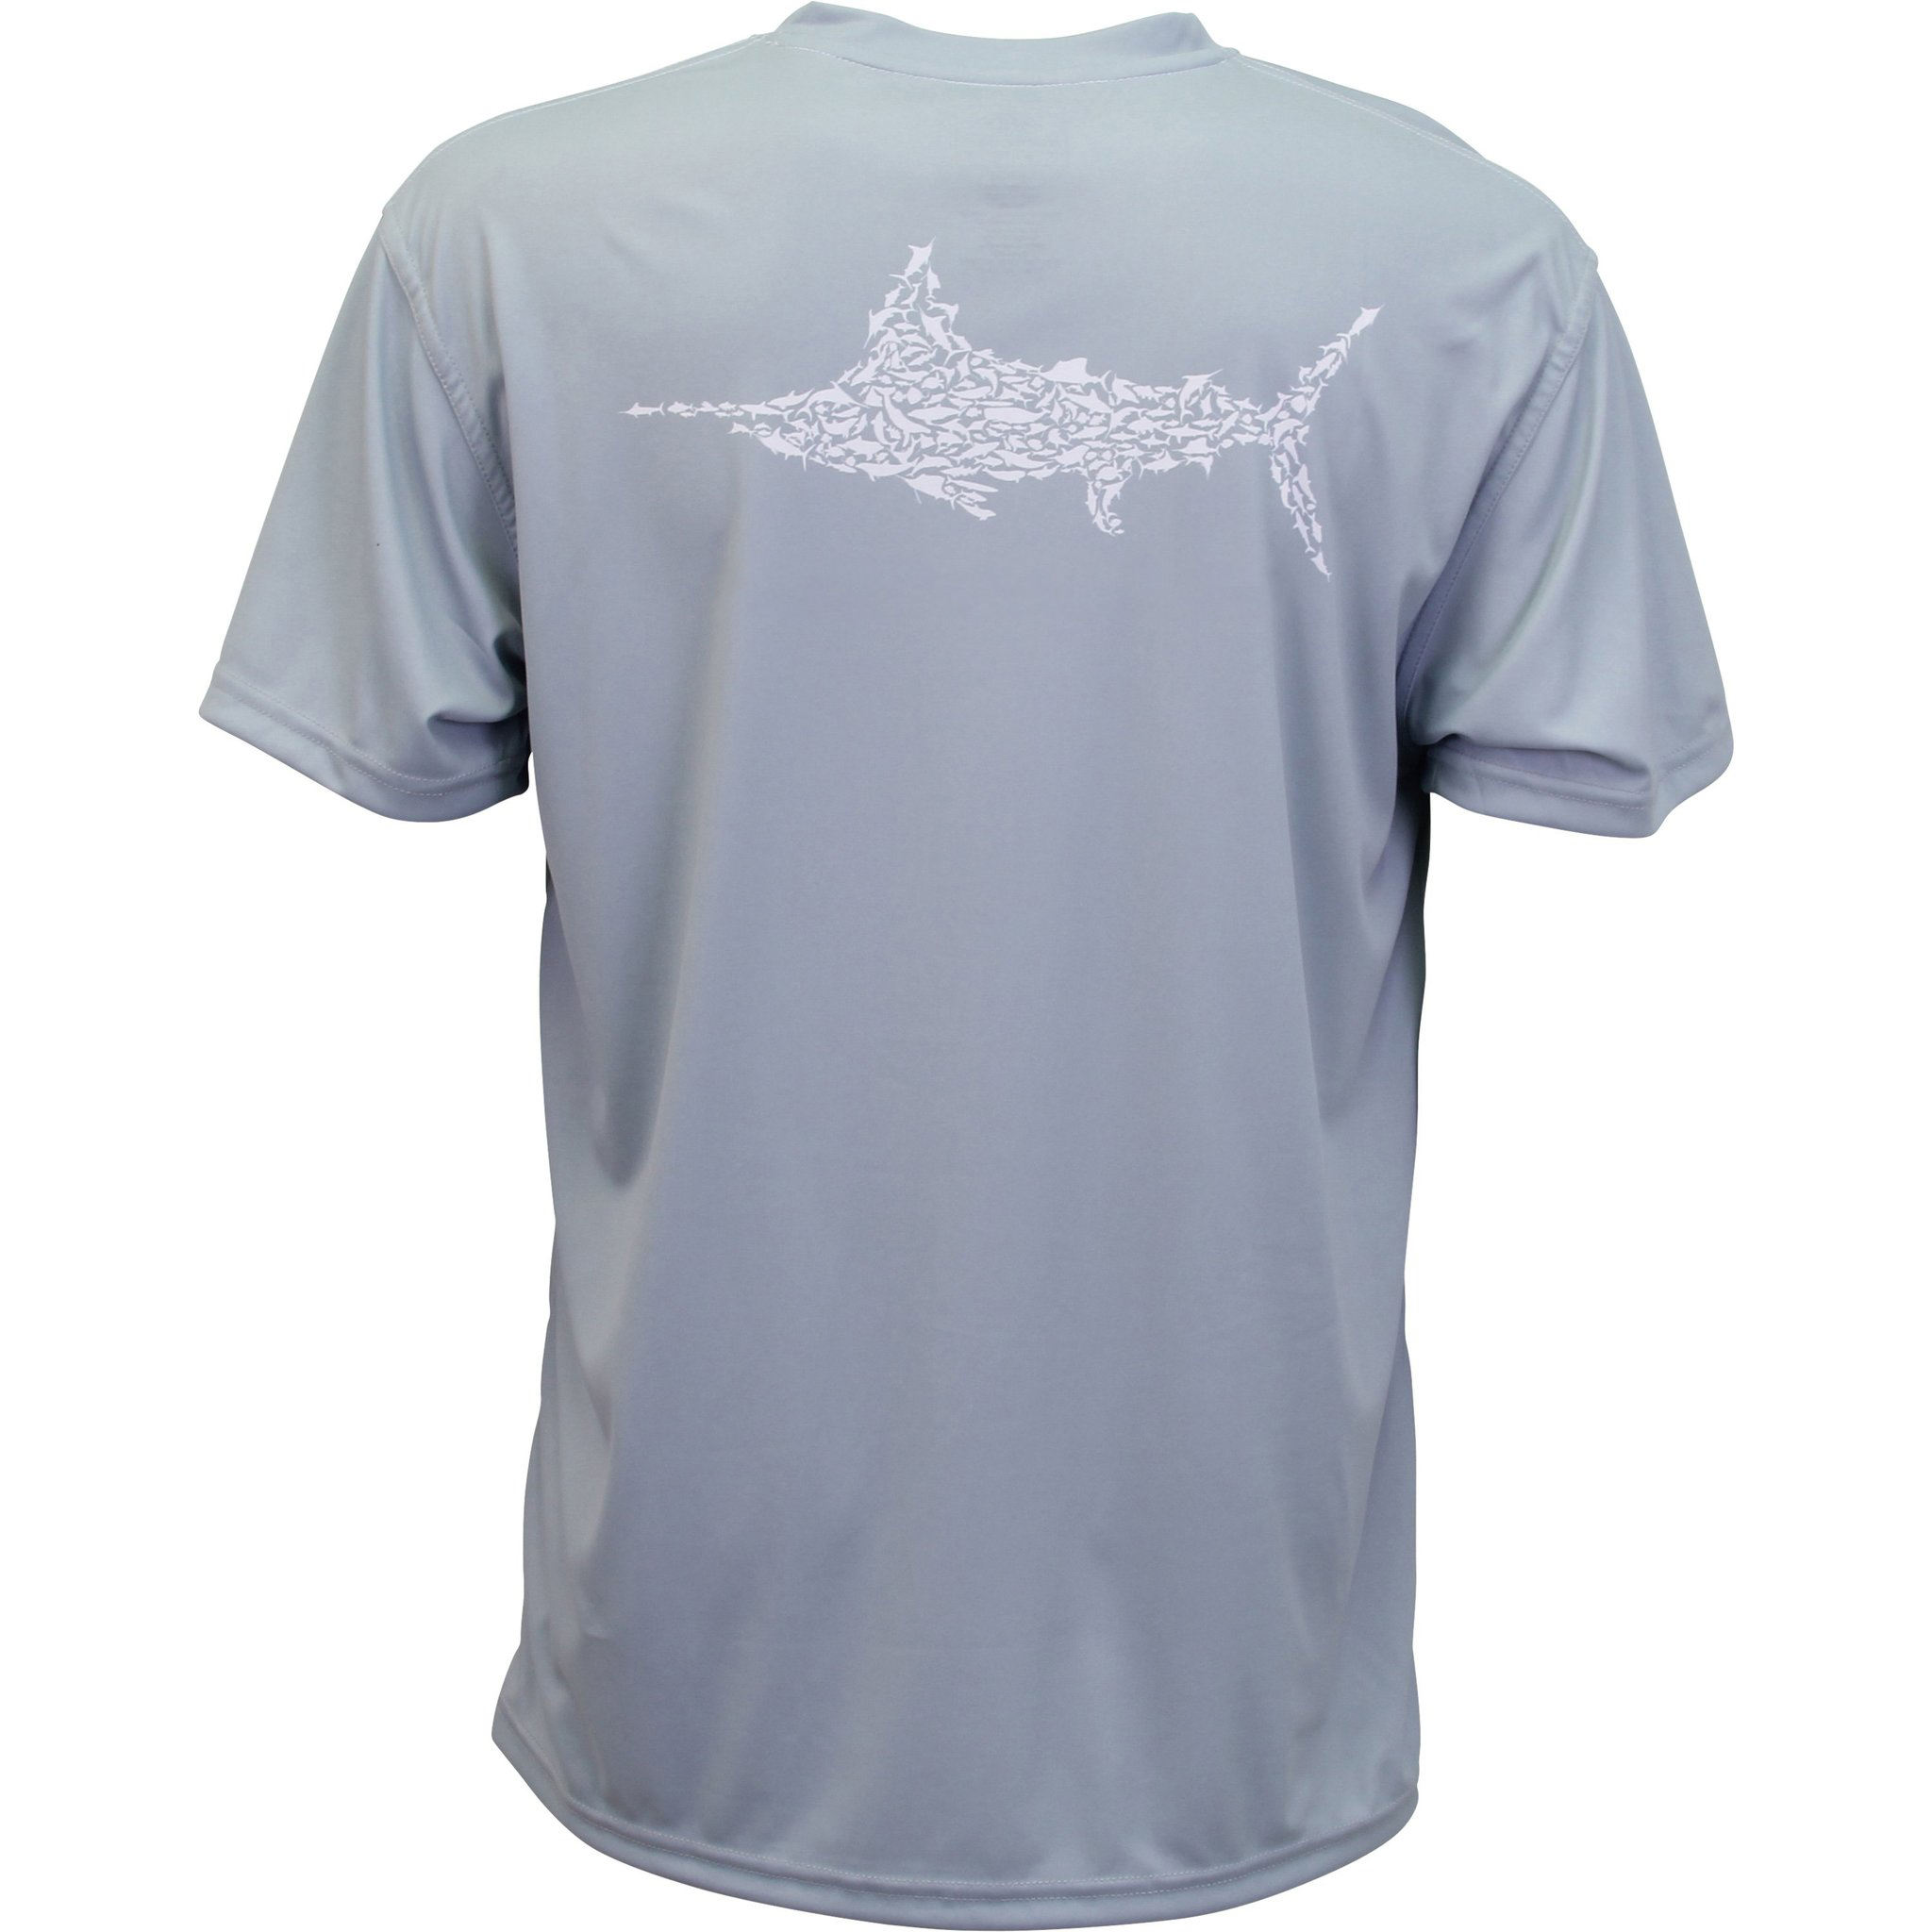 Brzo sušeća muška ribolovačka majica s prilagođenim logotipom OEM proizvođača od 100% poliestera za zaštitu od sunca